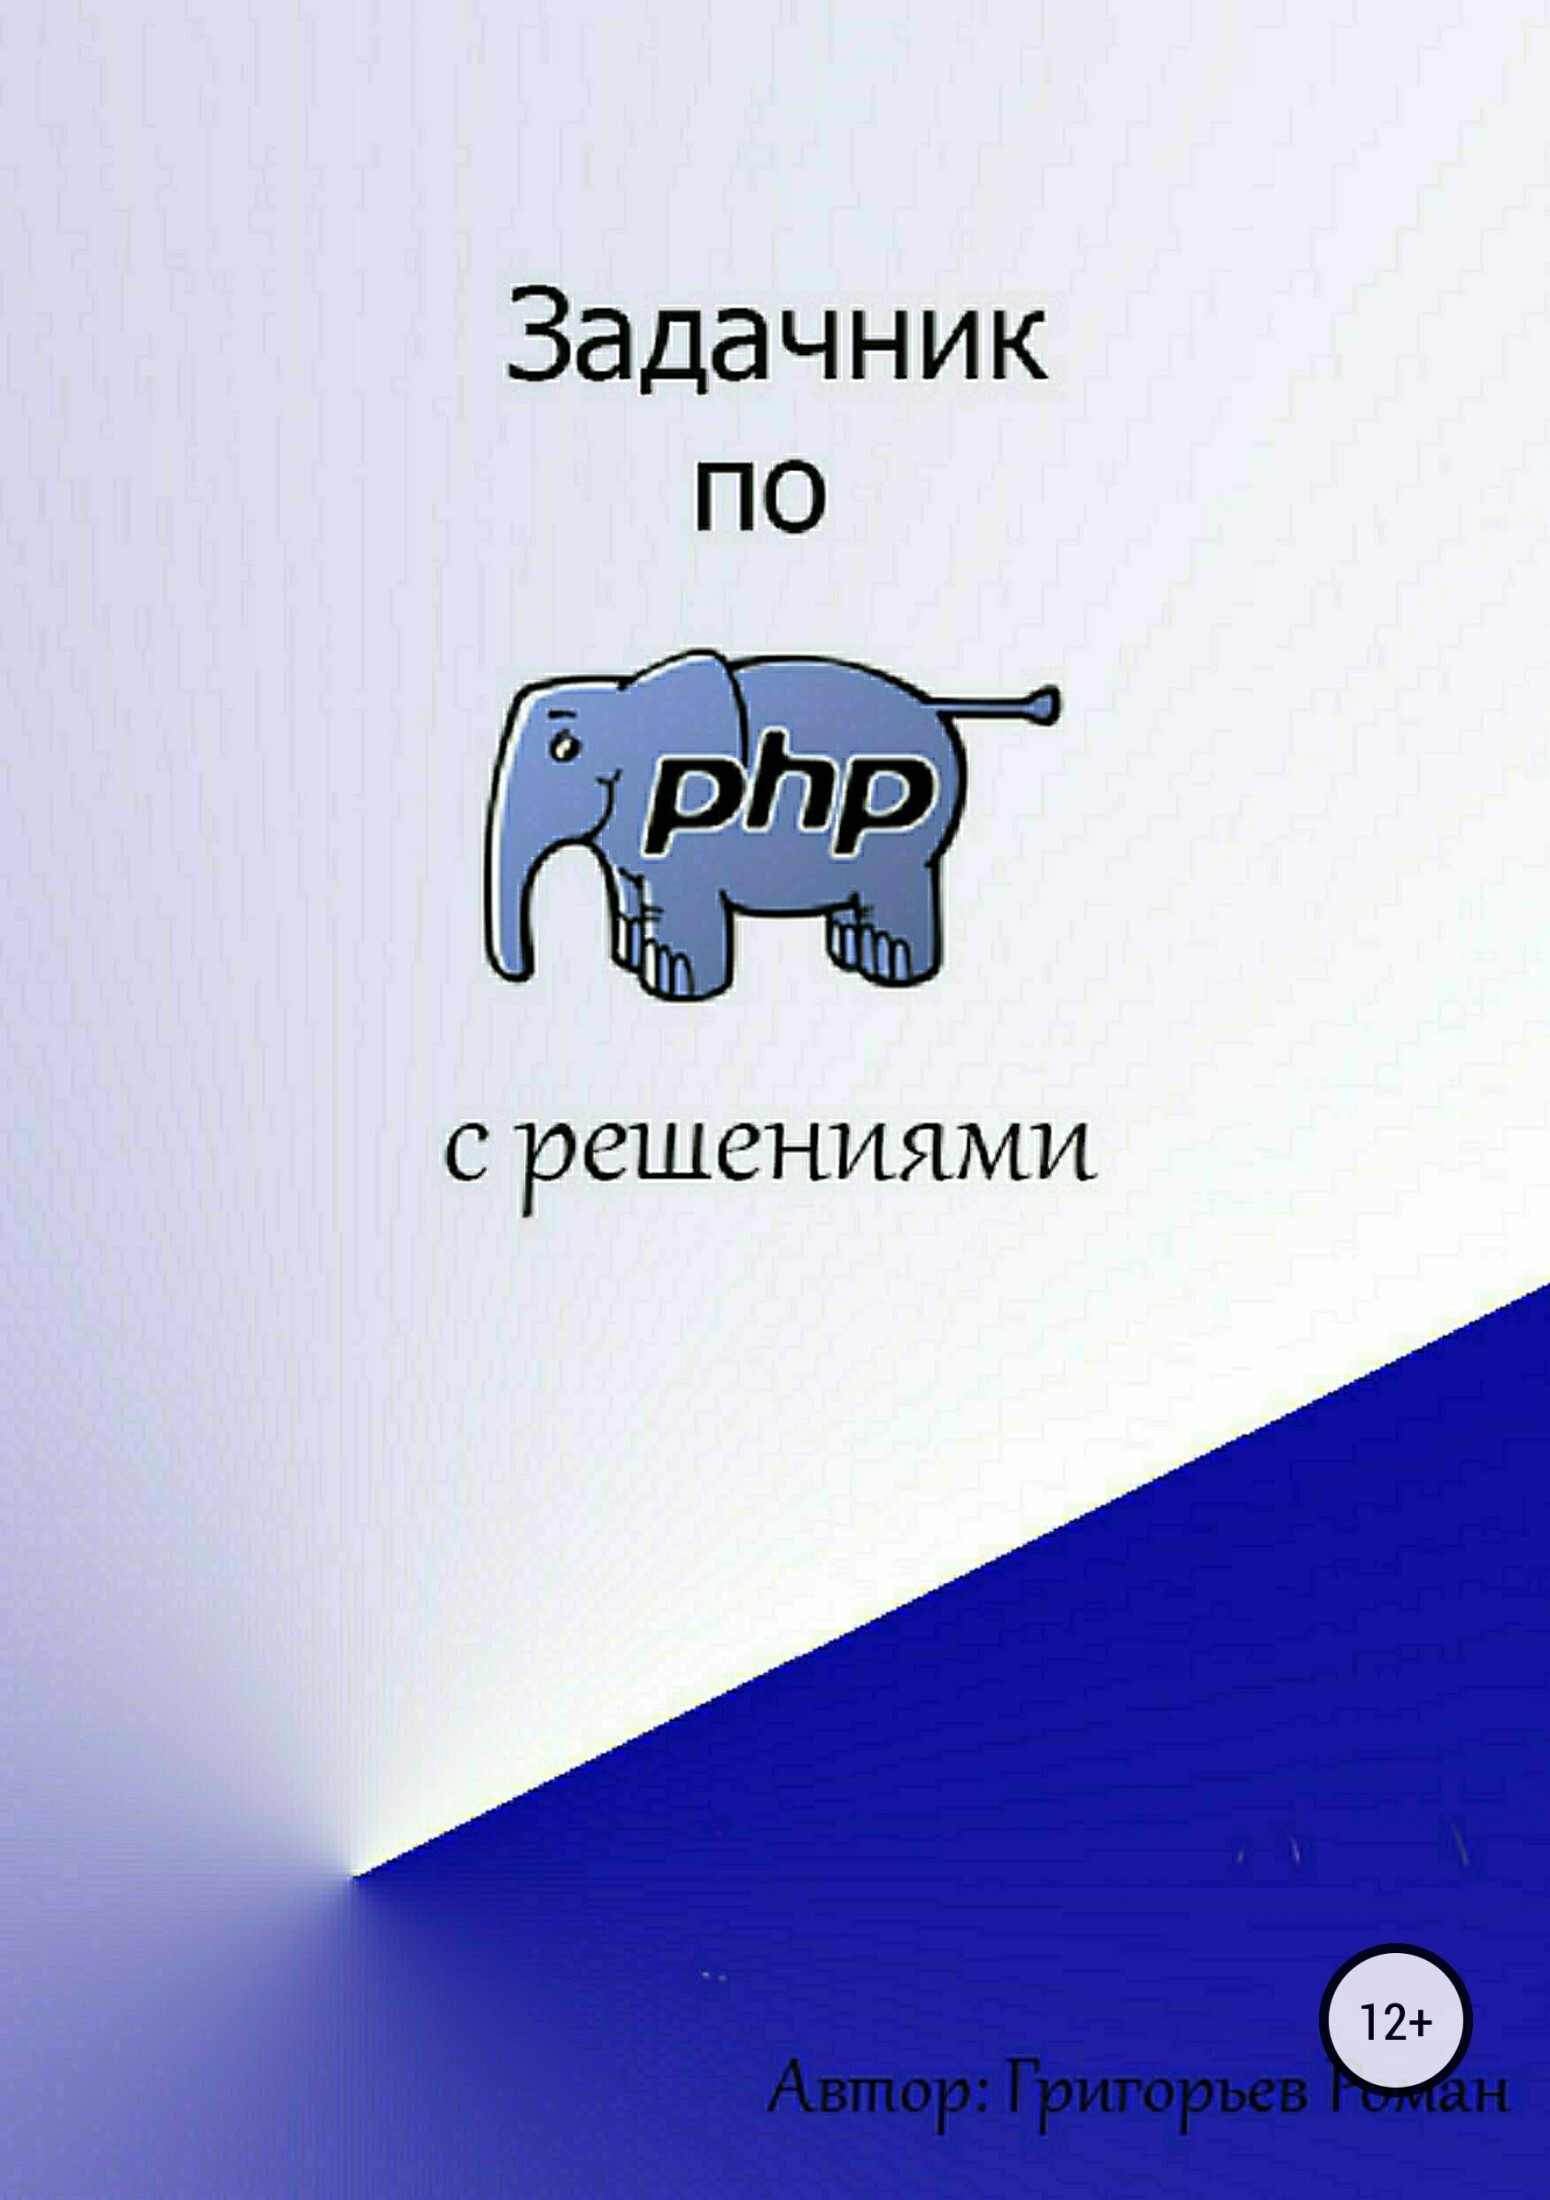 Книга  Задачник по PHP (с решениями) созданная Роман Игоревич Григорьев может относится к жанру базы данных, интернет, программирование. Стоимость электронной книги Задачник по PHP (с решениями) с идентификатором 30482497 составляет 119.00 руб.